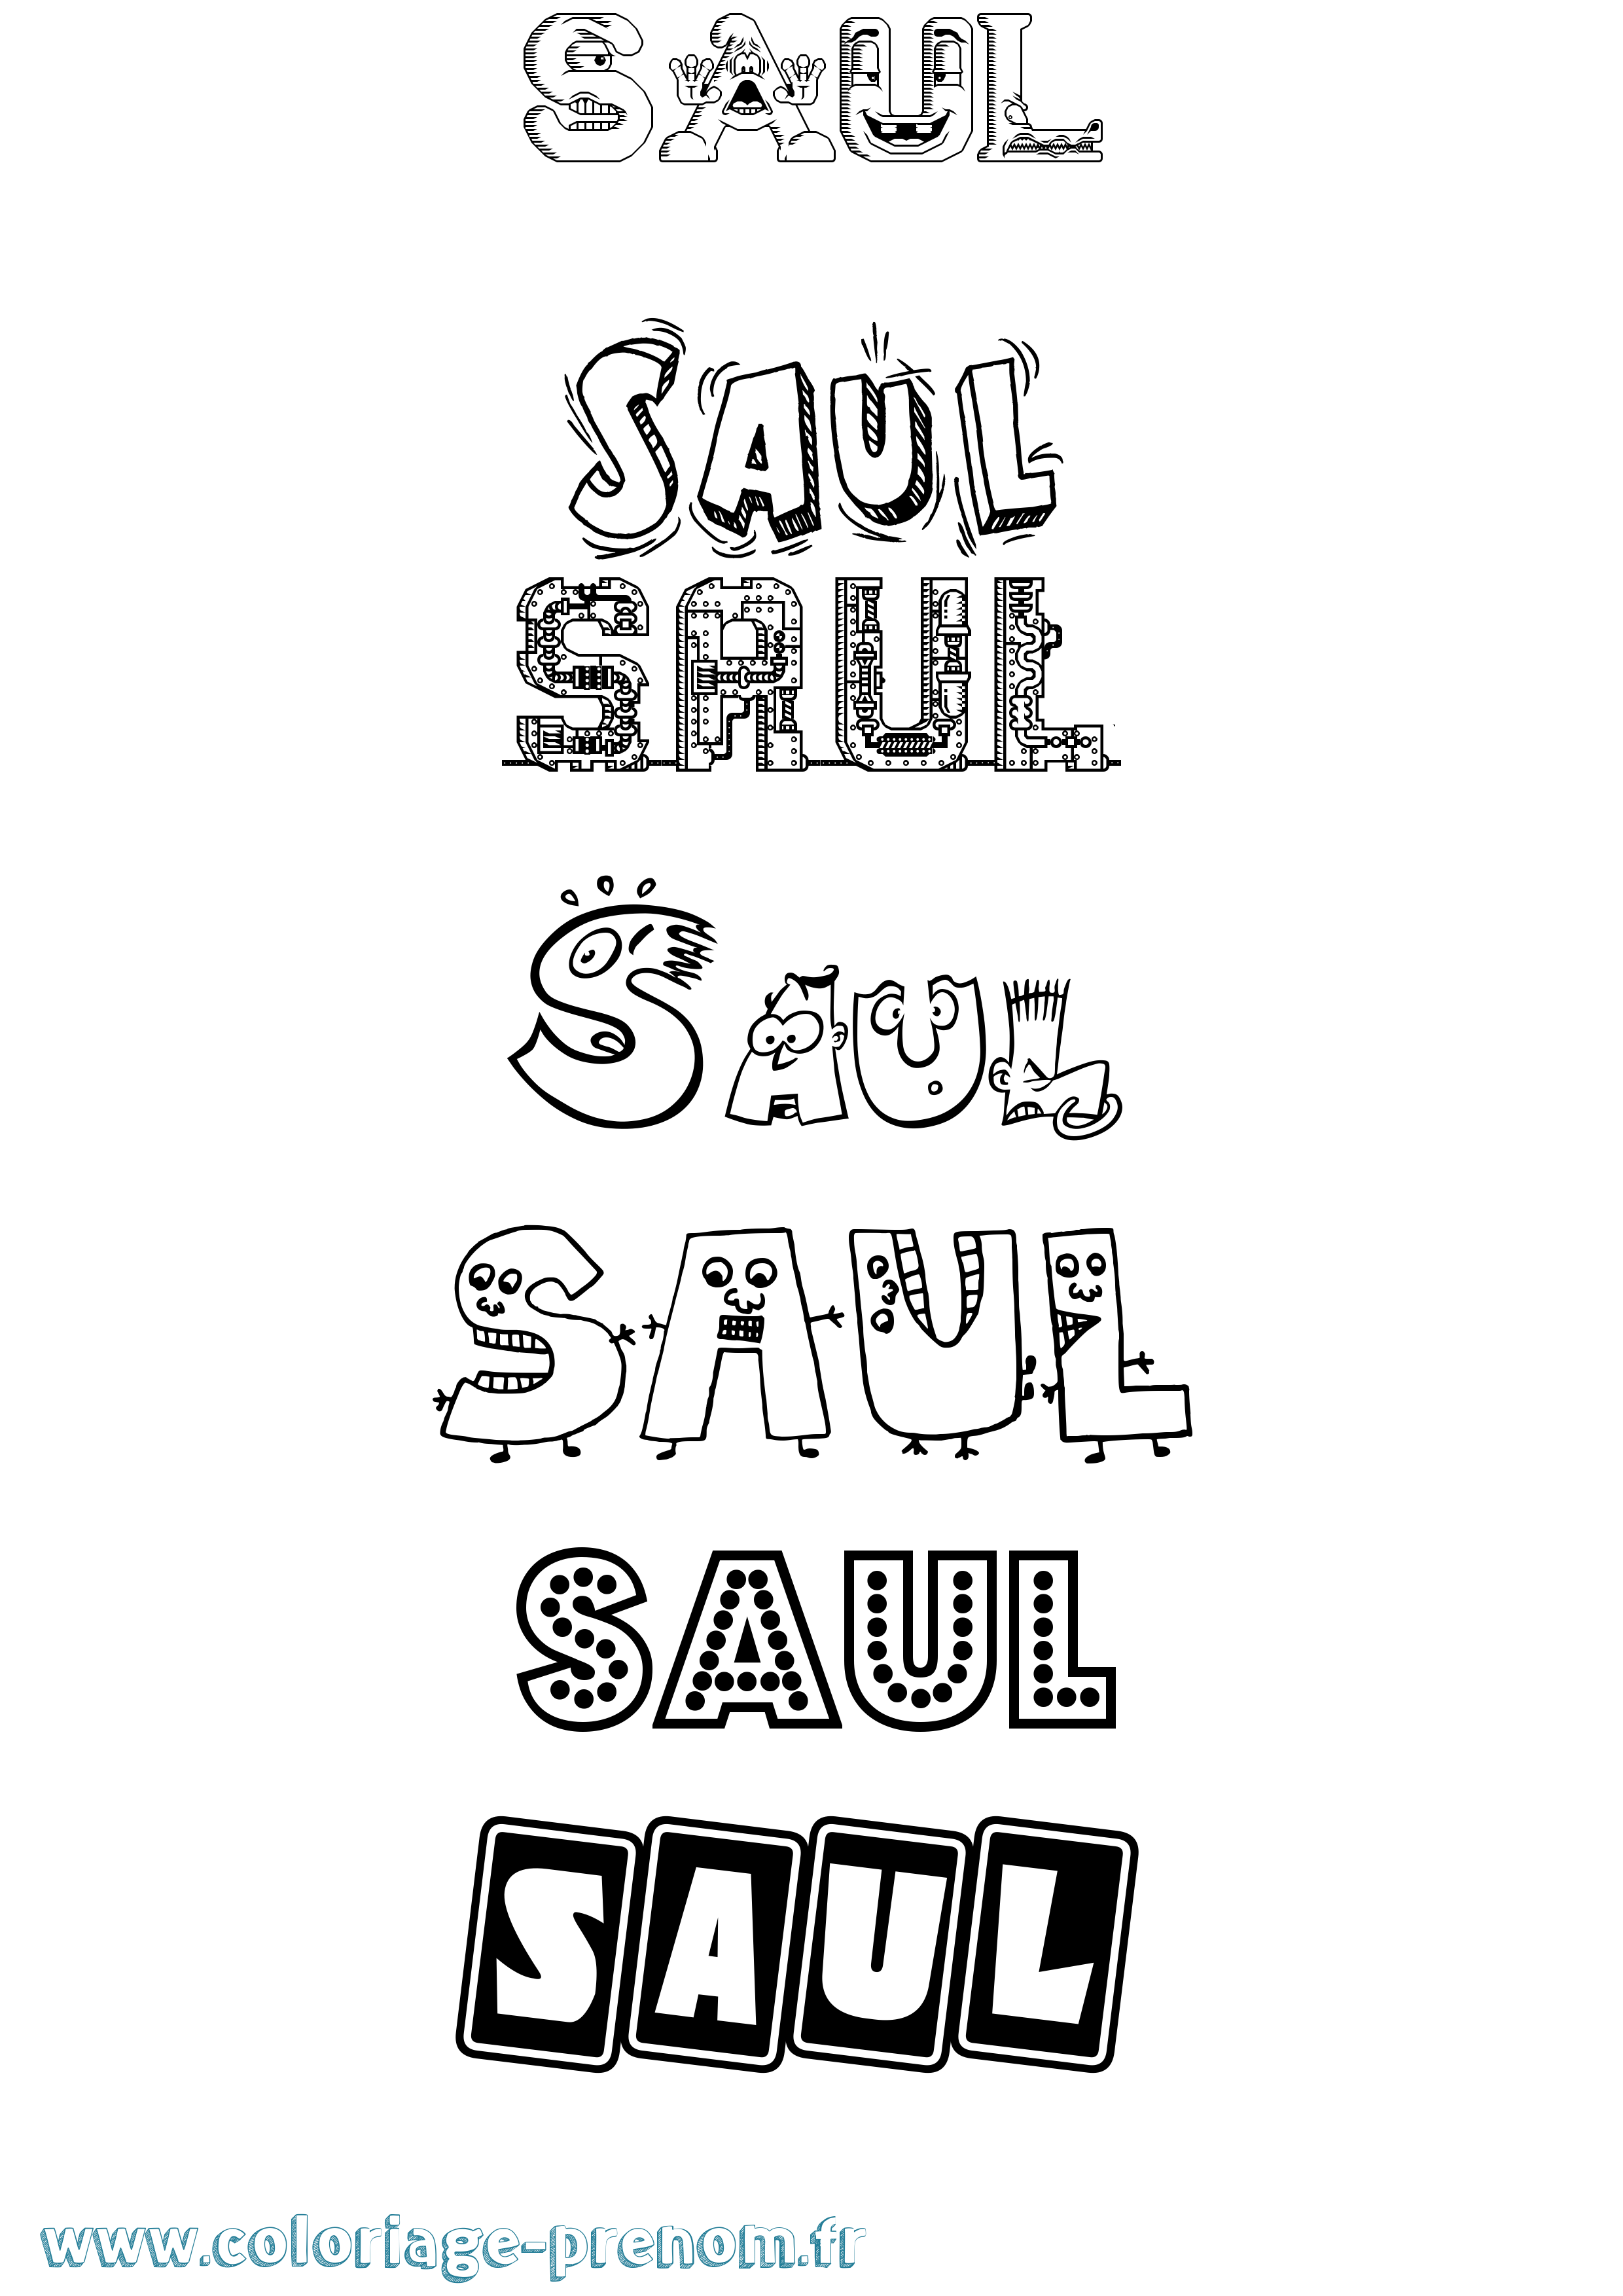 Coloriage prénom Saul